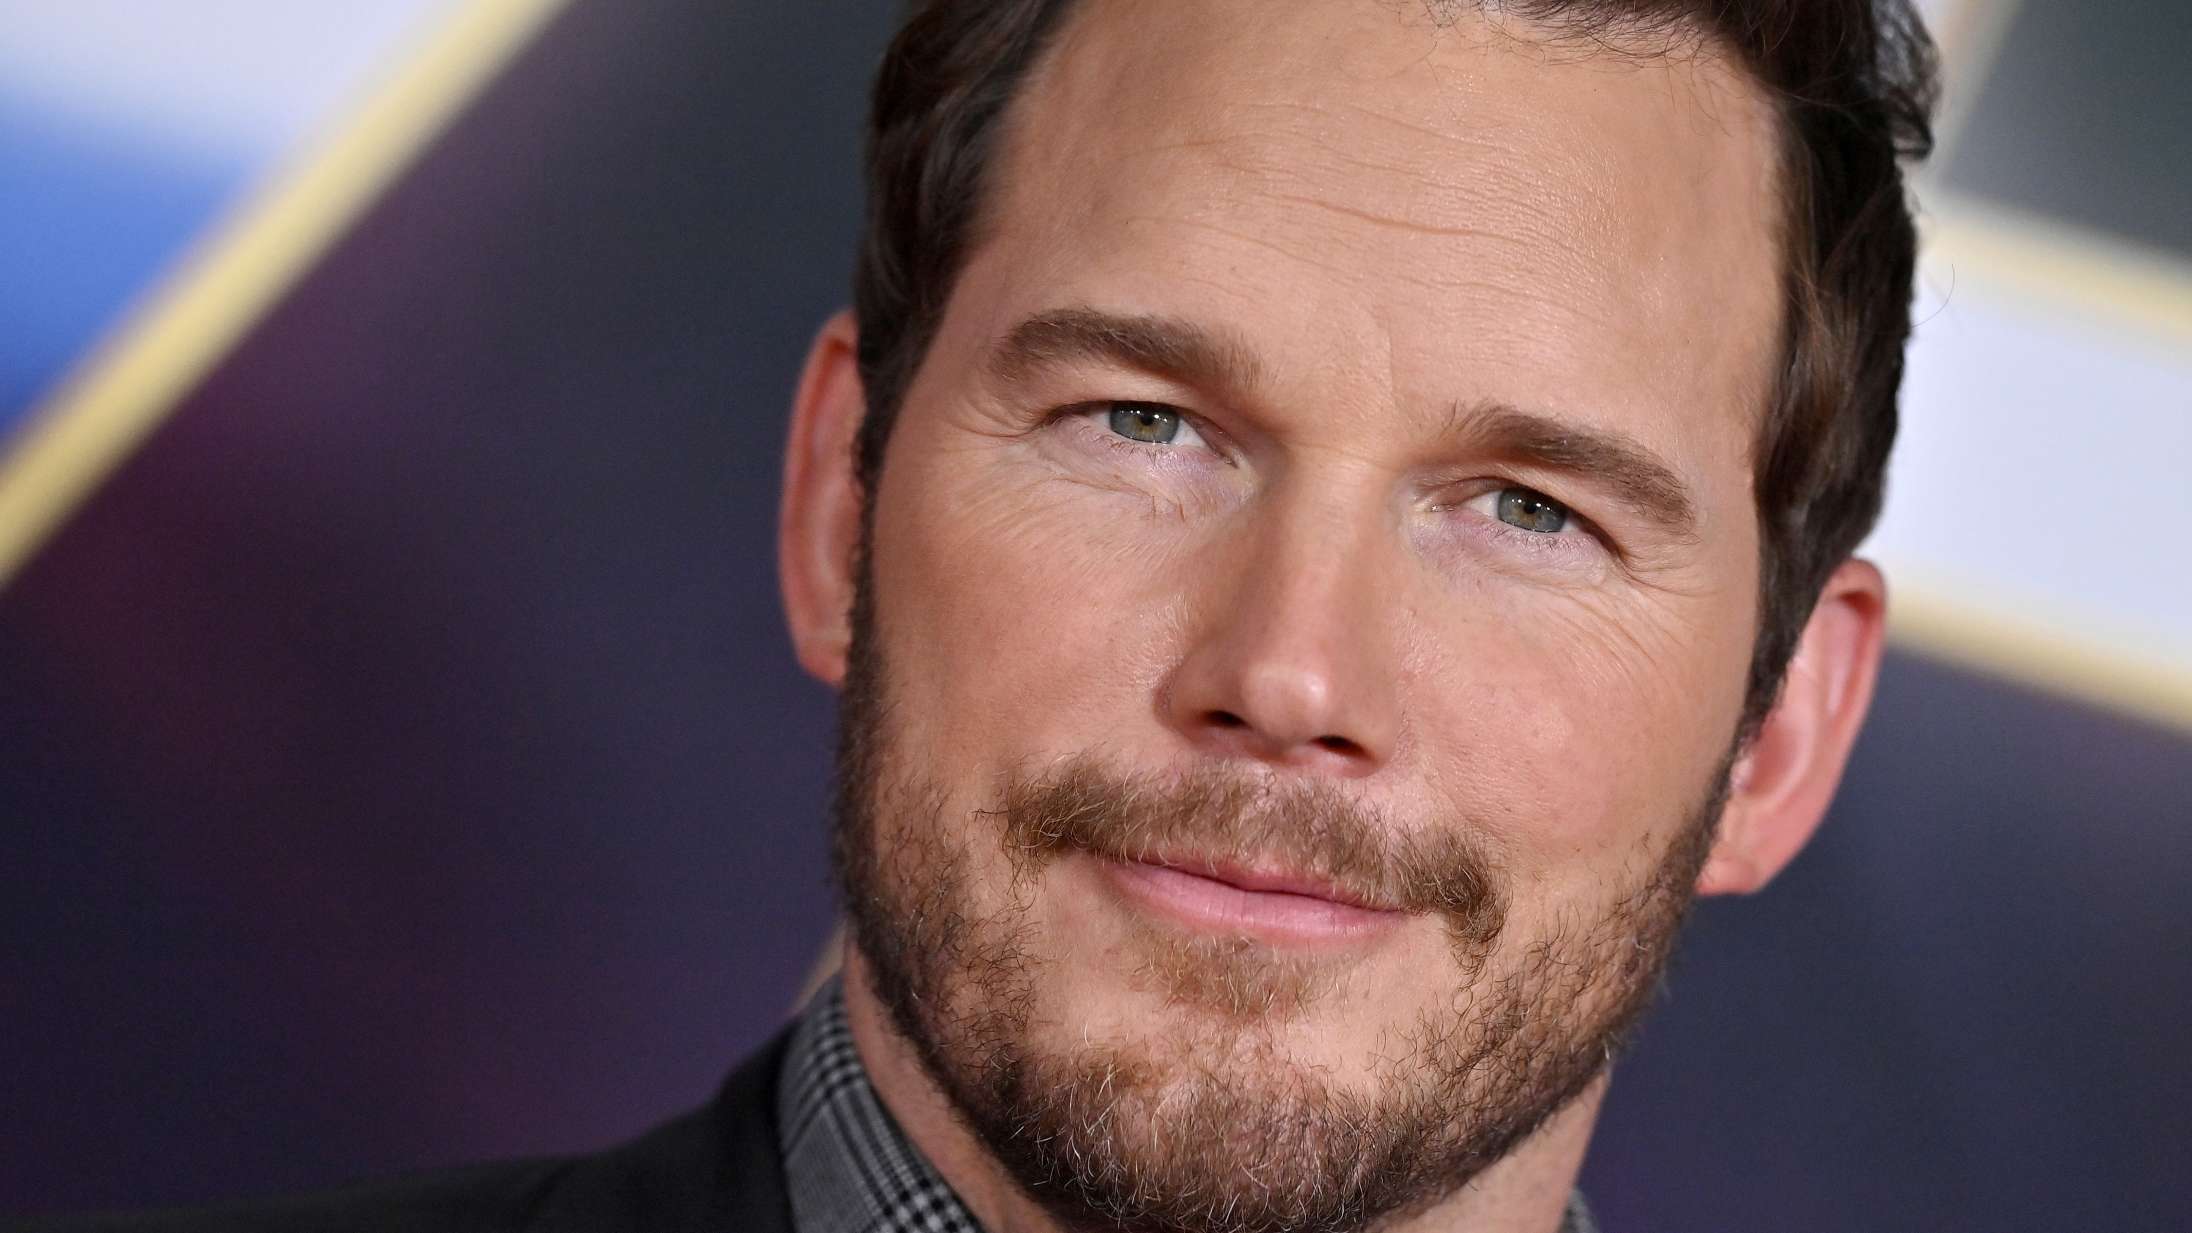 Chris Pratt er havnet i ny kontrovers online efter opslag om ‘woke kritikere’